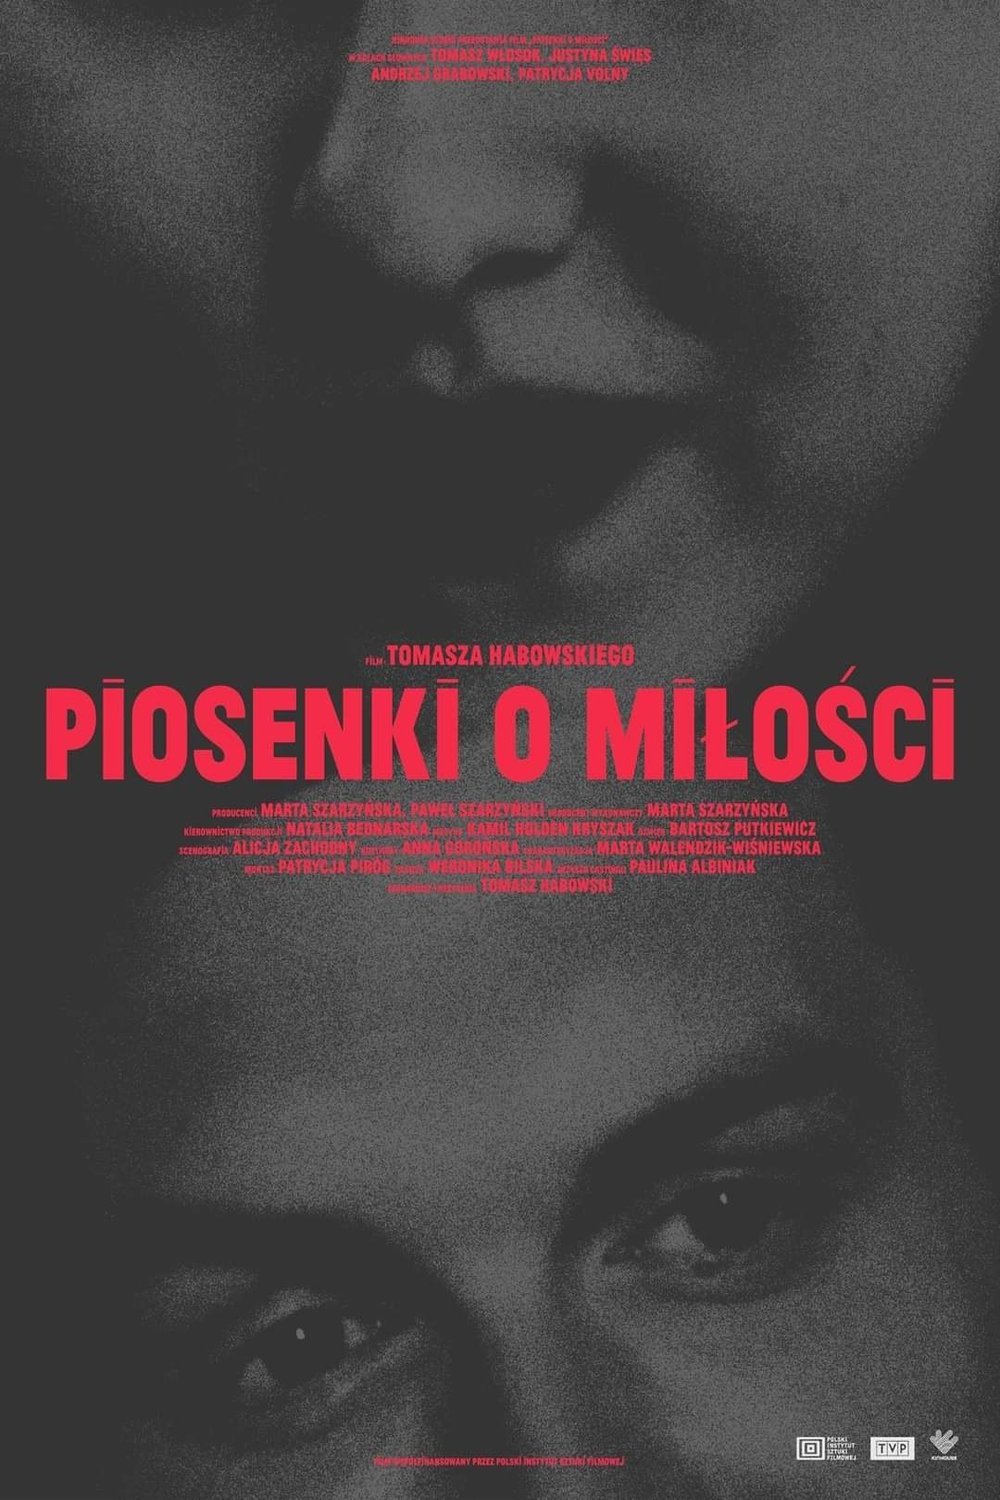 Polish poster of the movie Piosenki o milosci